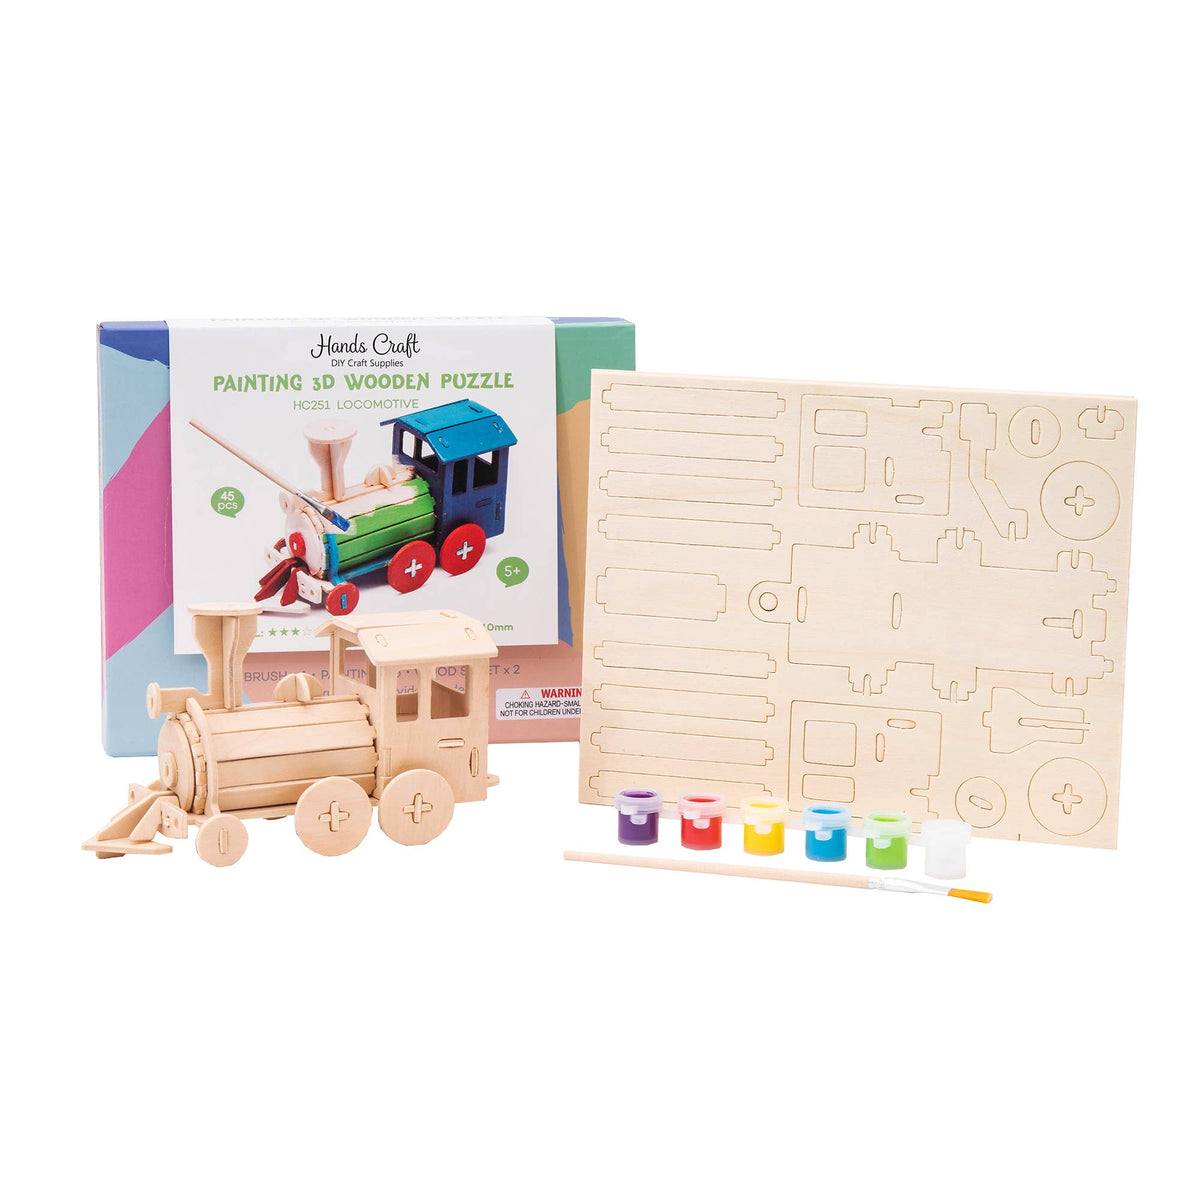 3D Wooden Puzzle Paint Kit: Locomotive Train